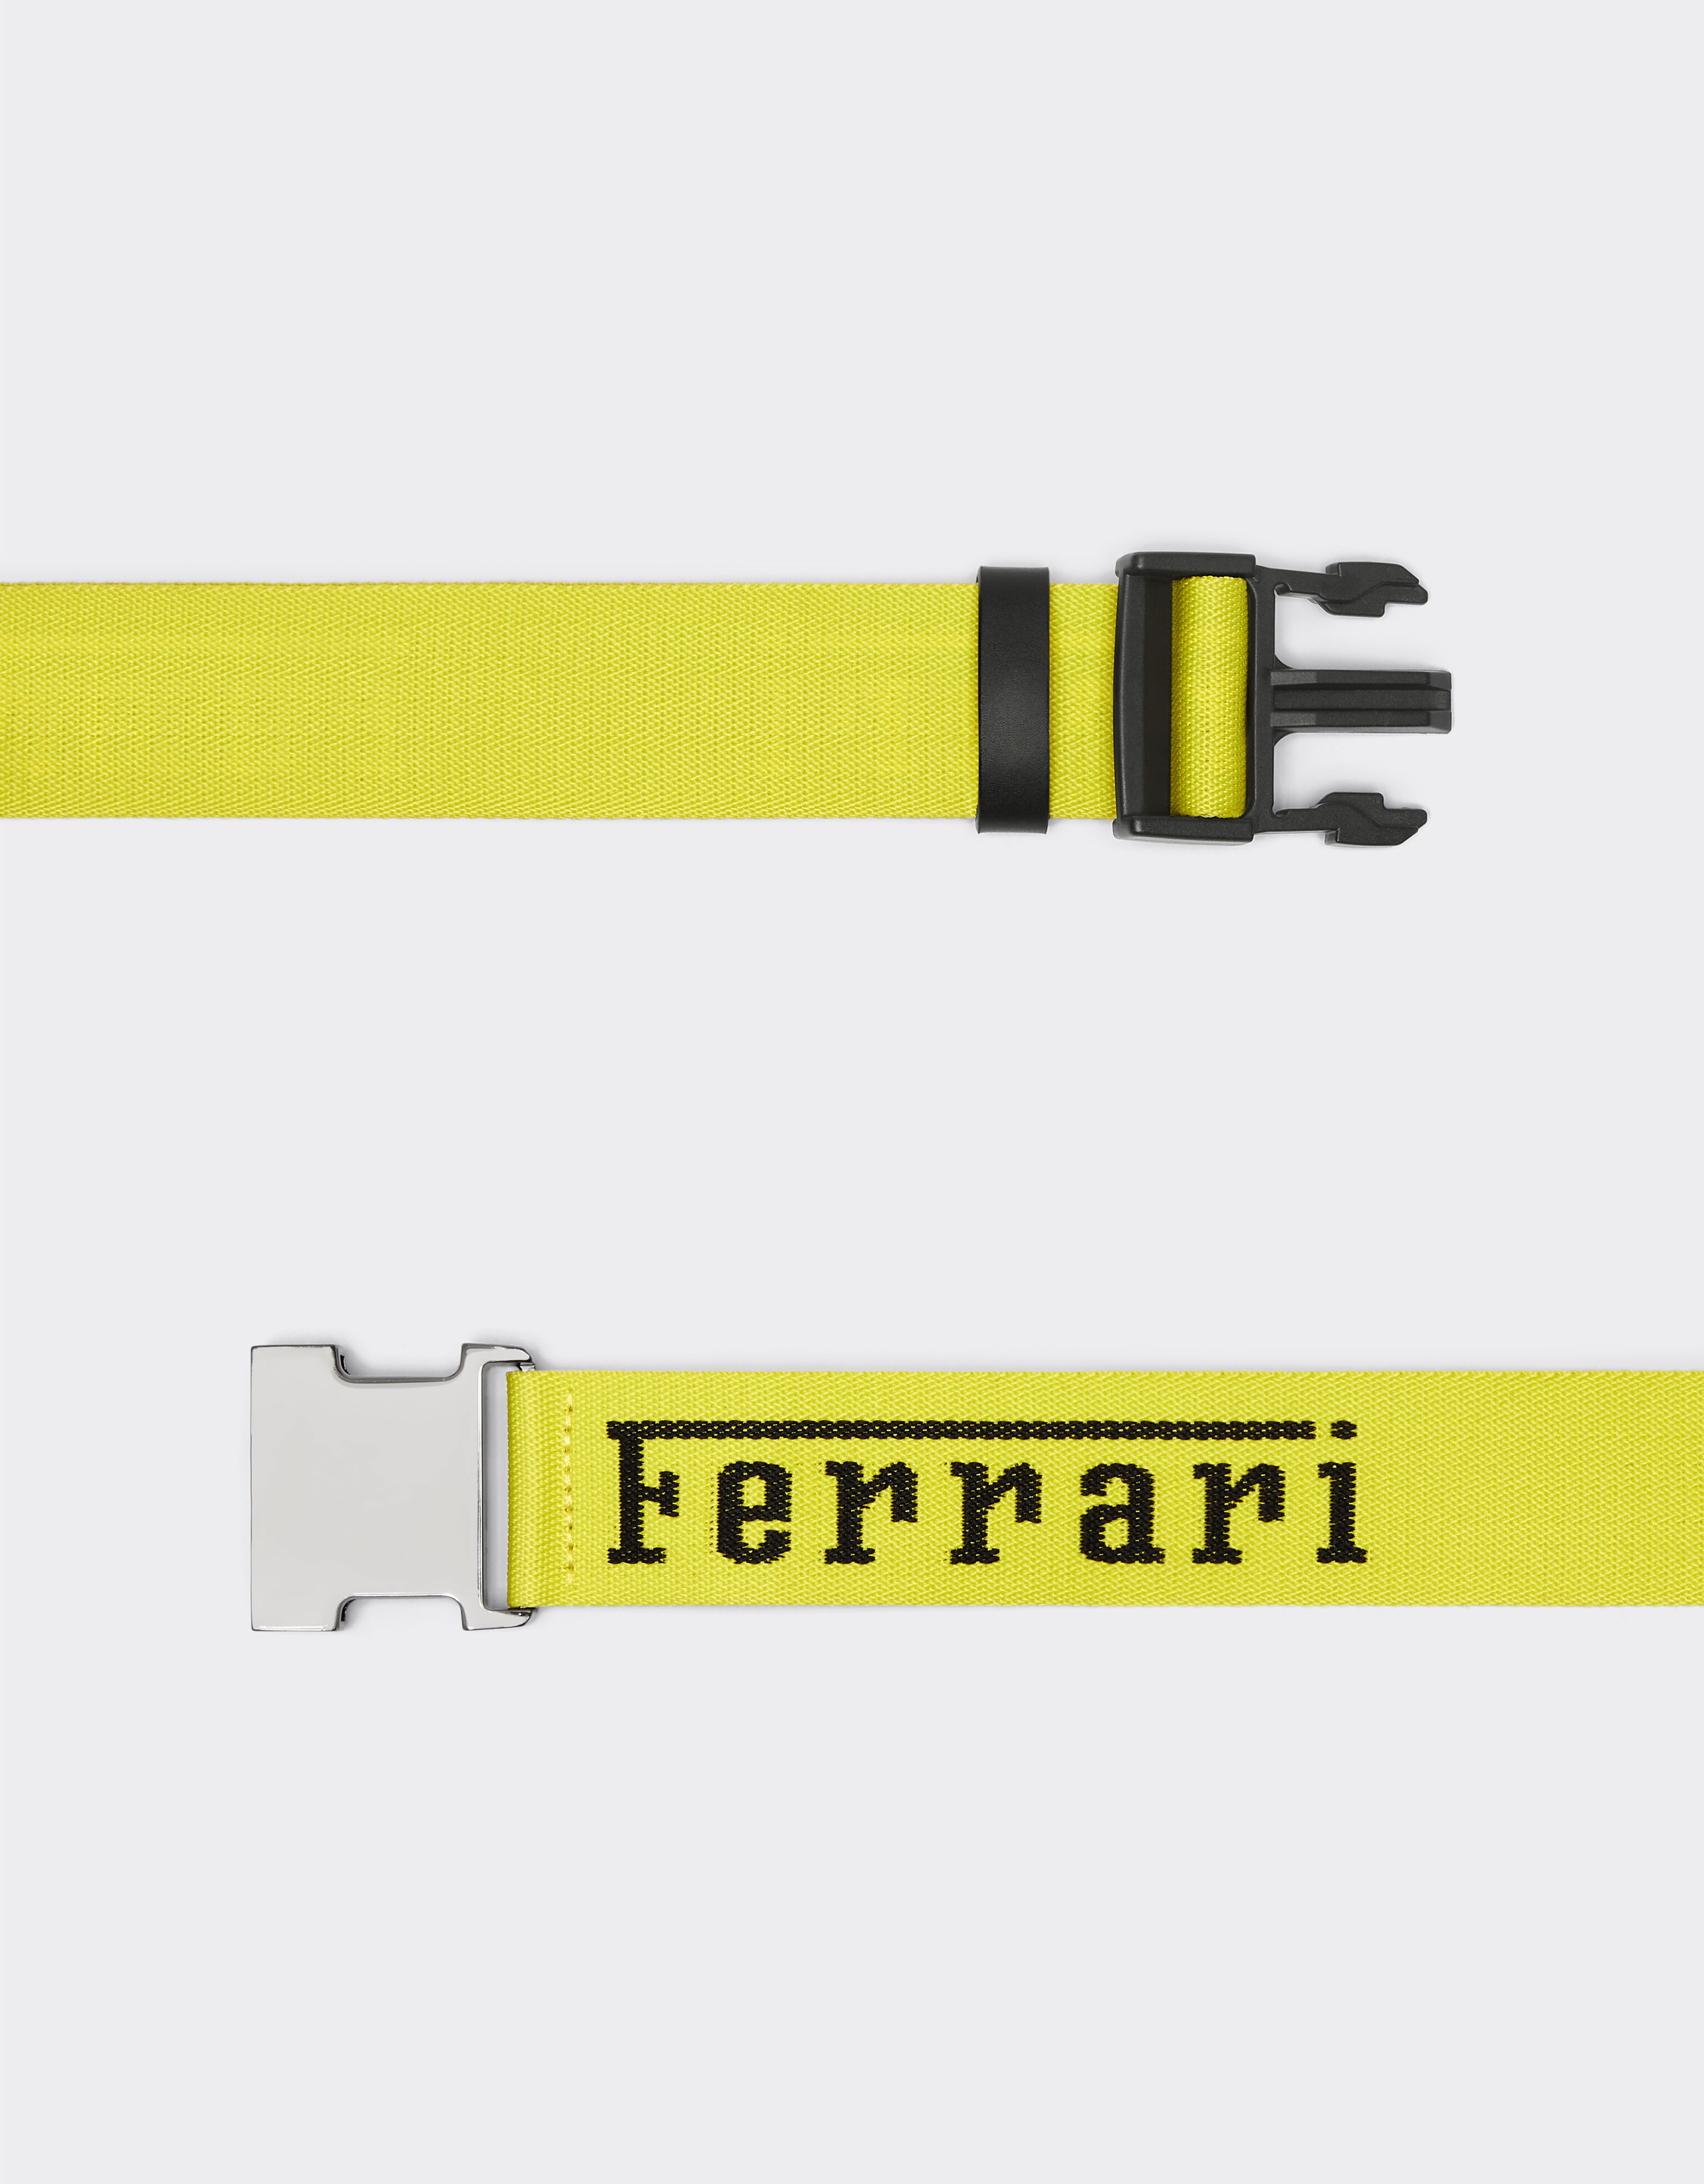 Ferrari 法拉利徽标提花腰带 黄色 20295f